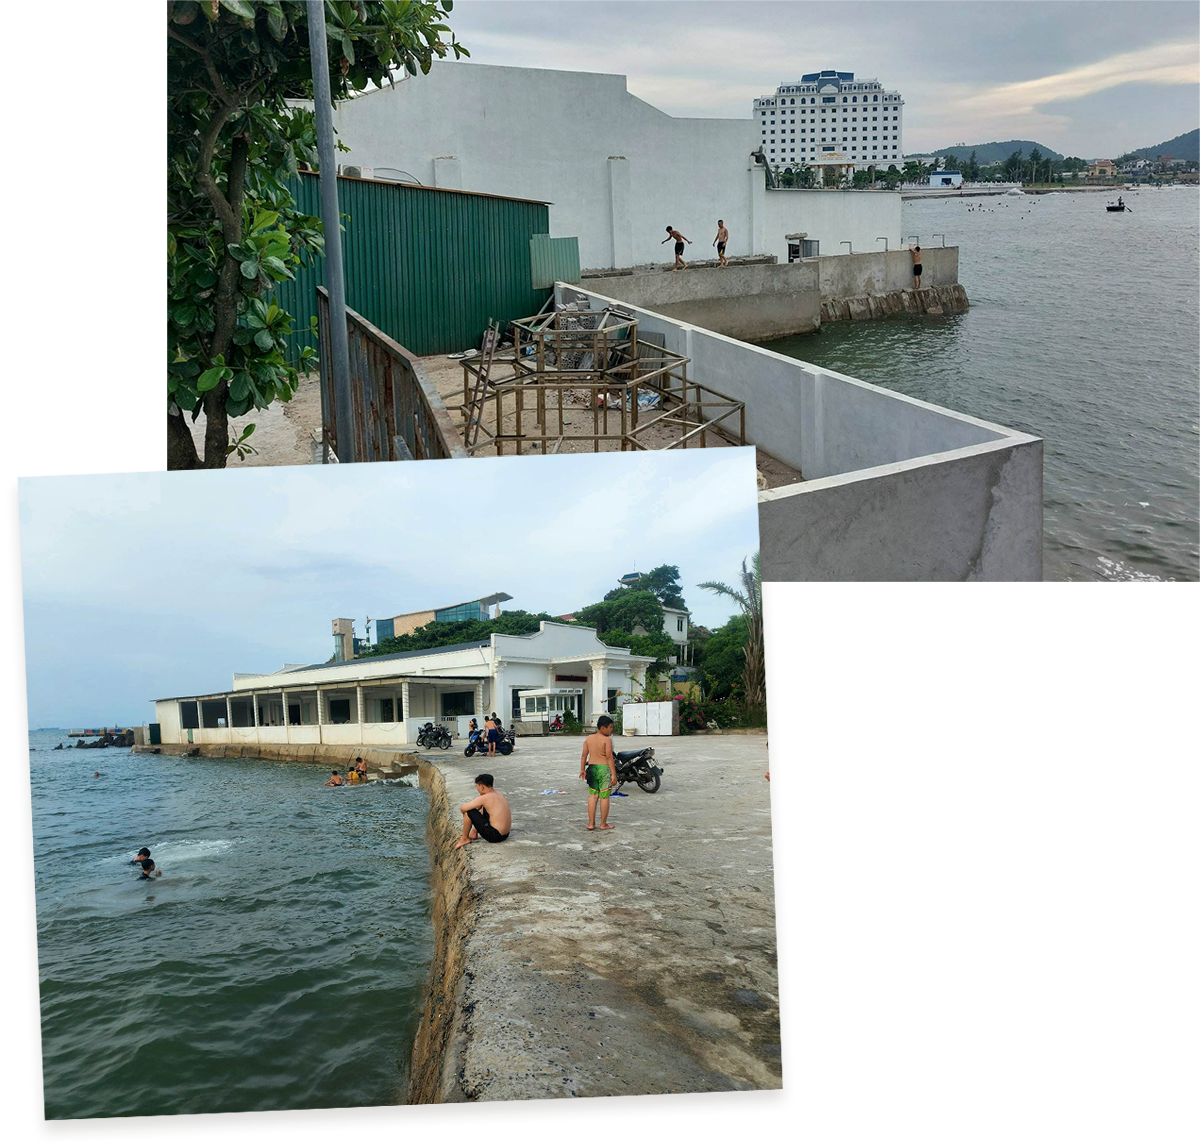 Nhà hàng và bờ kè xây dựng không đúng quy hoạch, lấn biển ở Dự án Quần thể du lịch Lan Châu - Song Ngư.